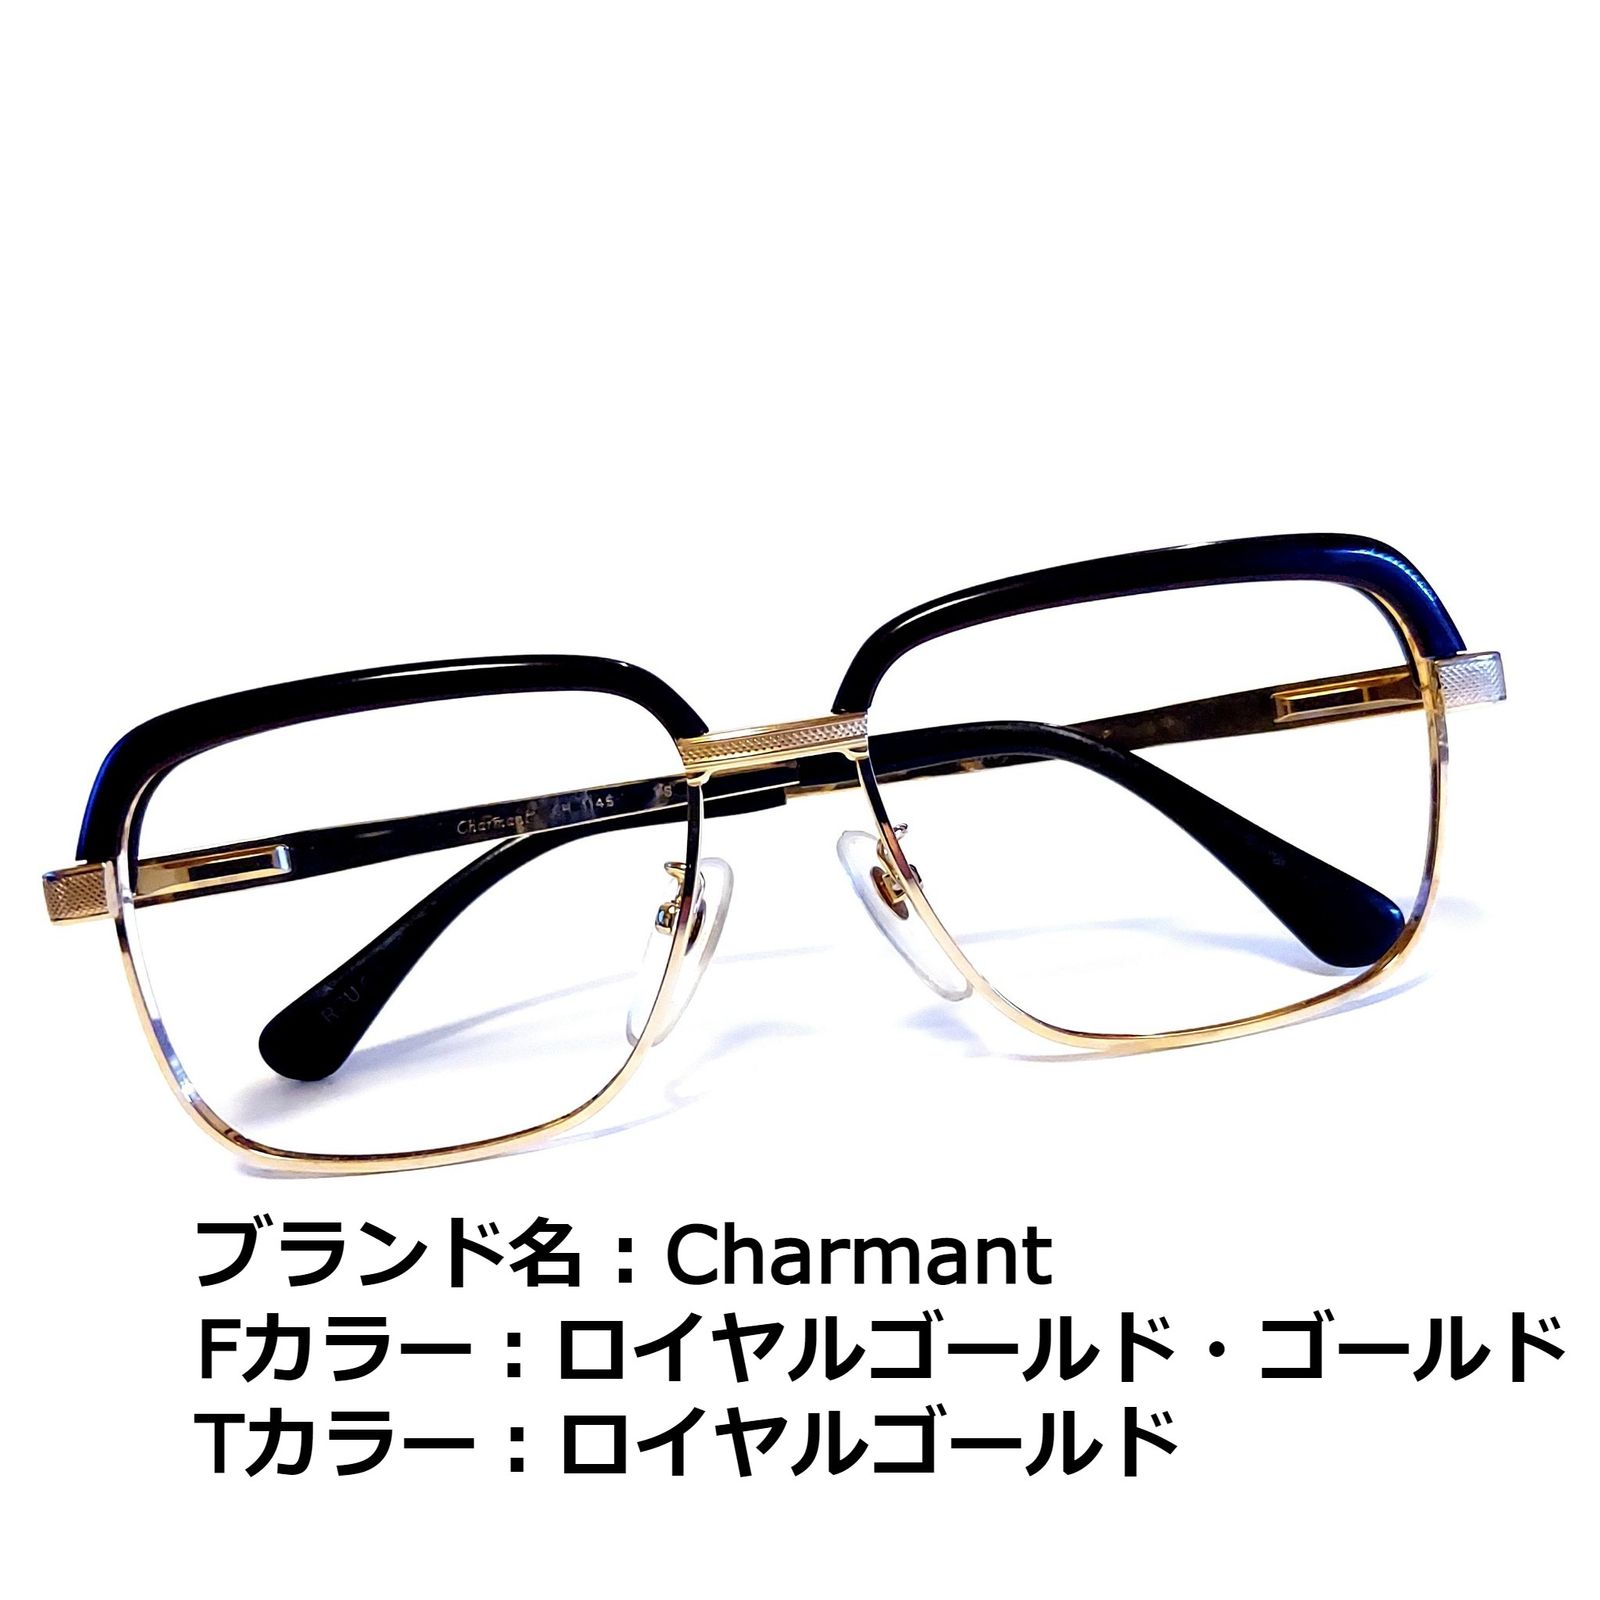 No.1573メガネ Charmant【度数入り込み価格】 | aosacoffee.com